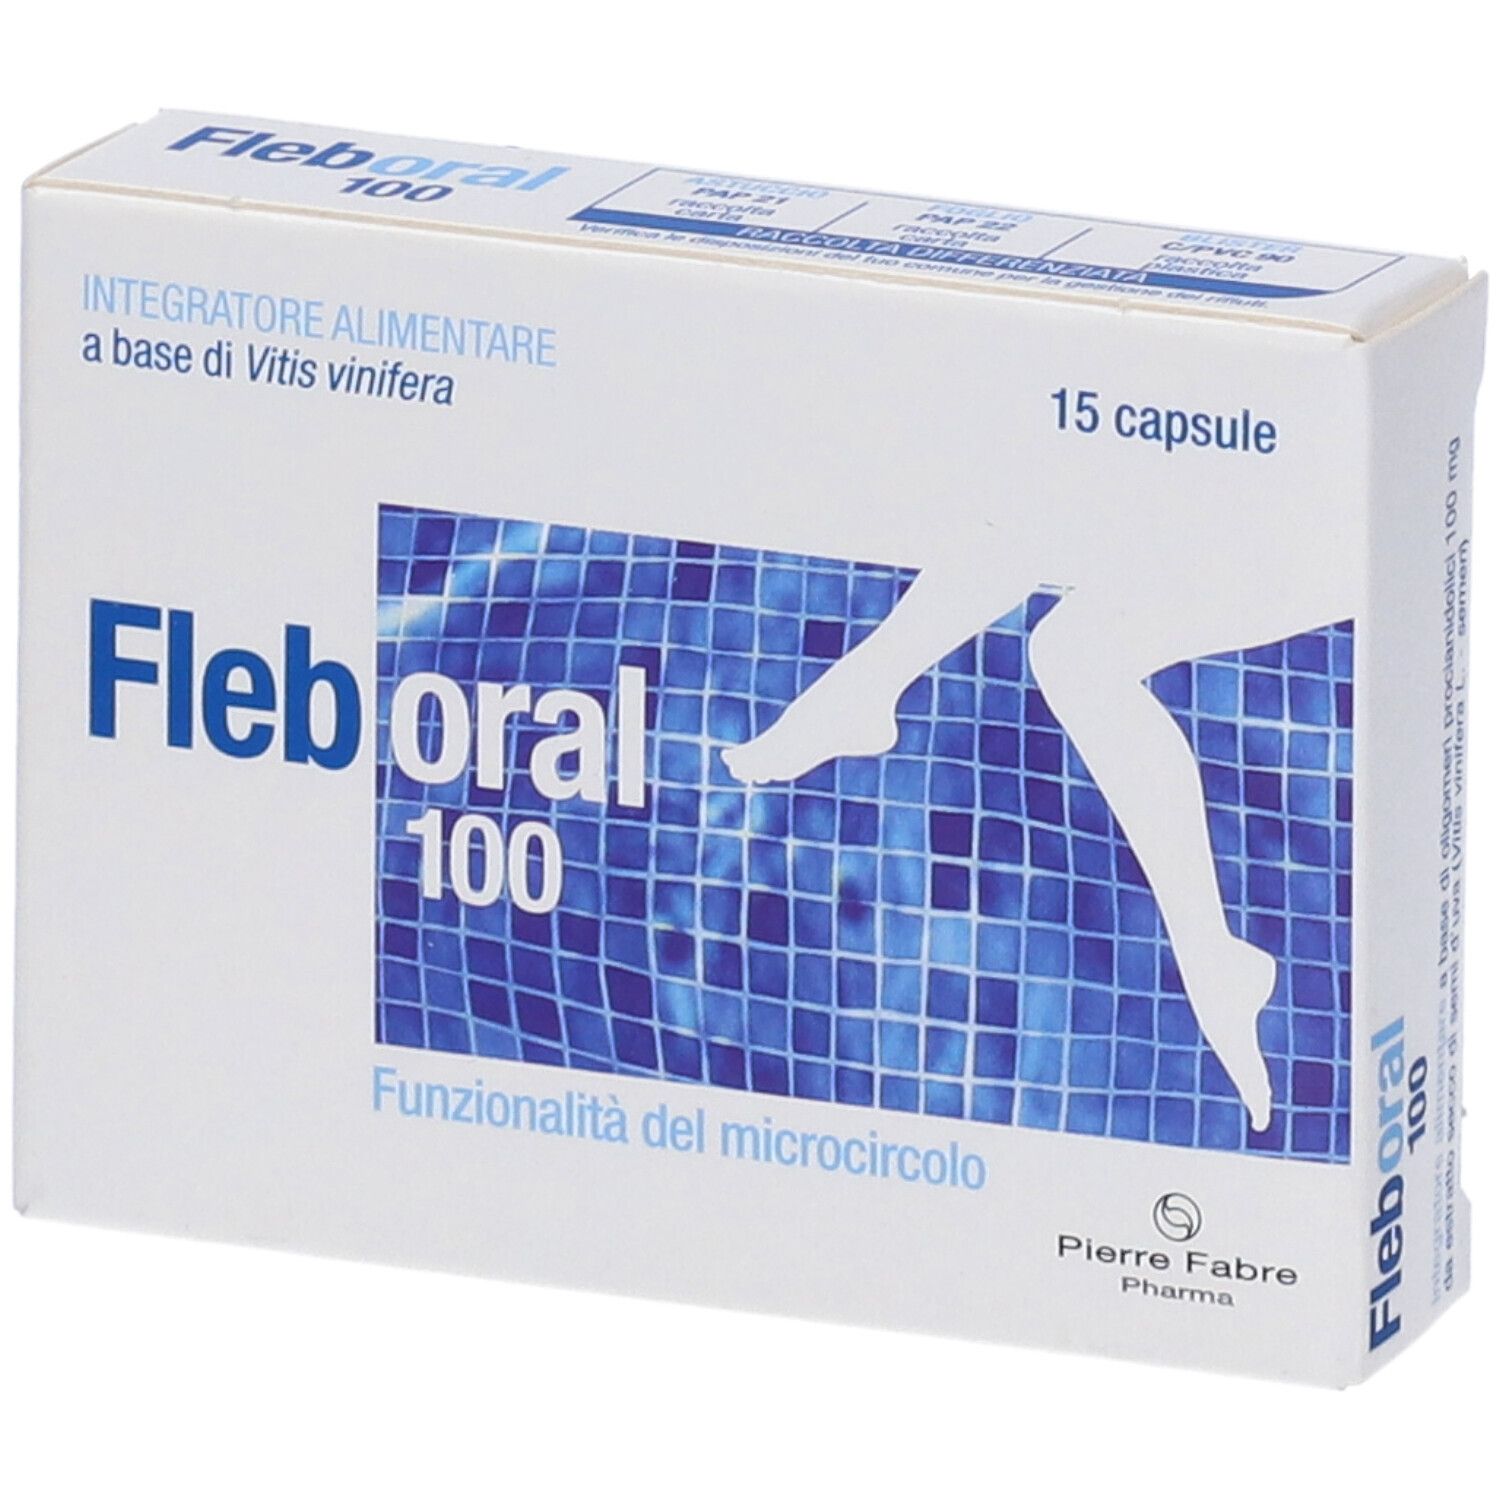 Image of Pierre Fabre Fleboral® 100